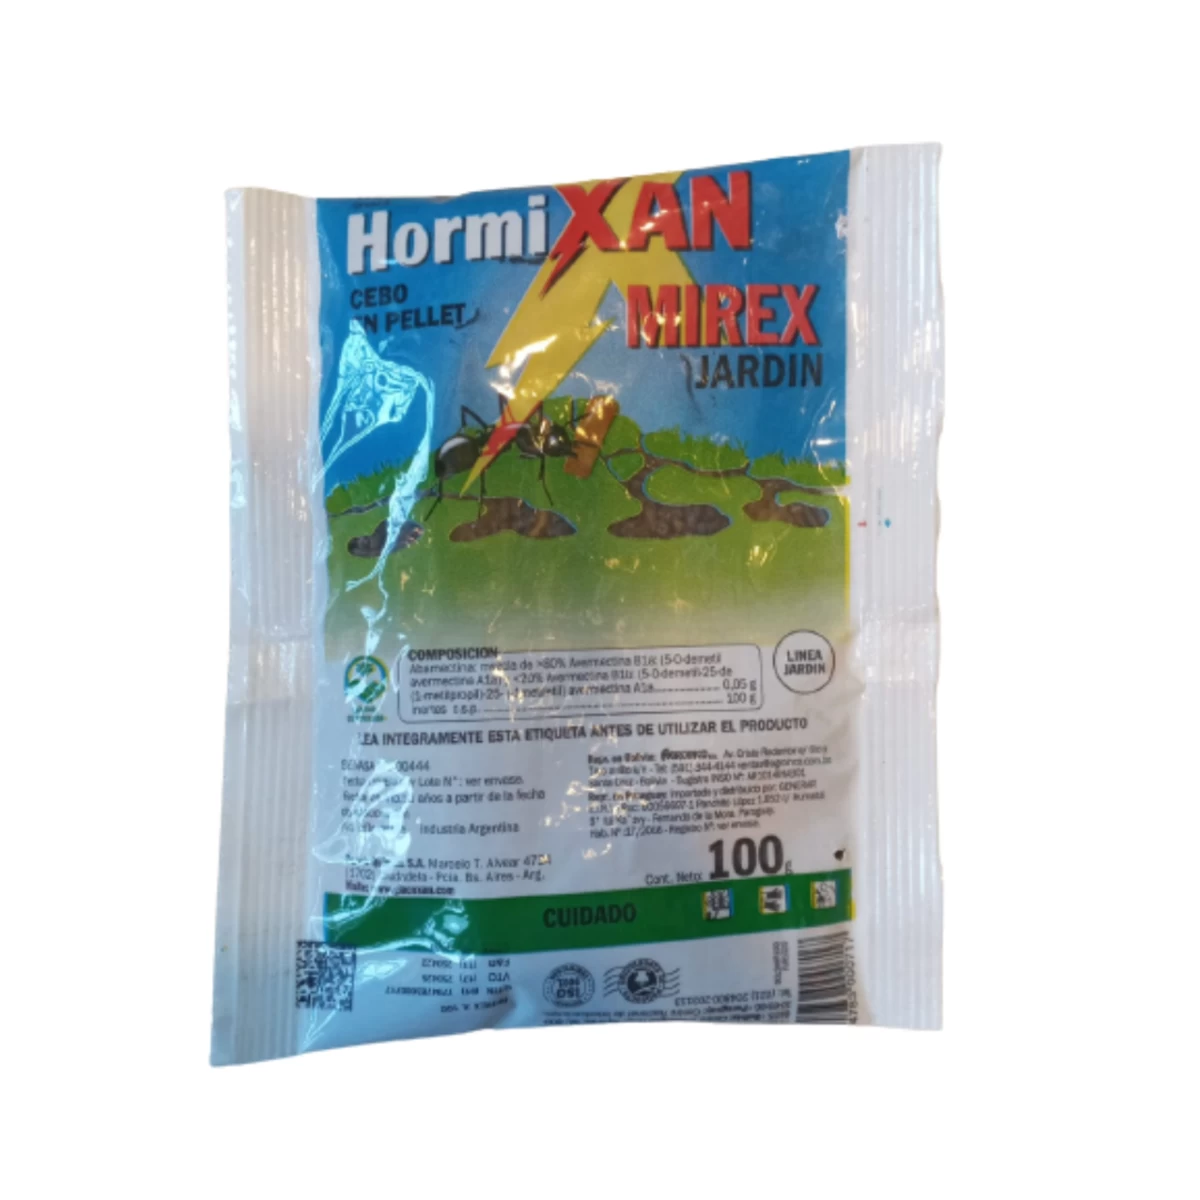 hormixan-mirex-cebo-insecticida-hormiguicida-100g